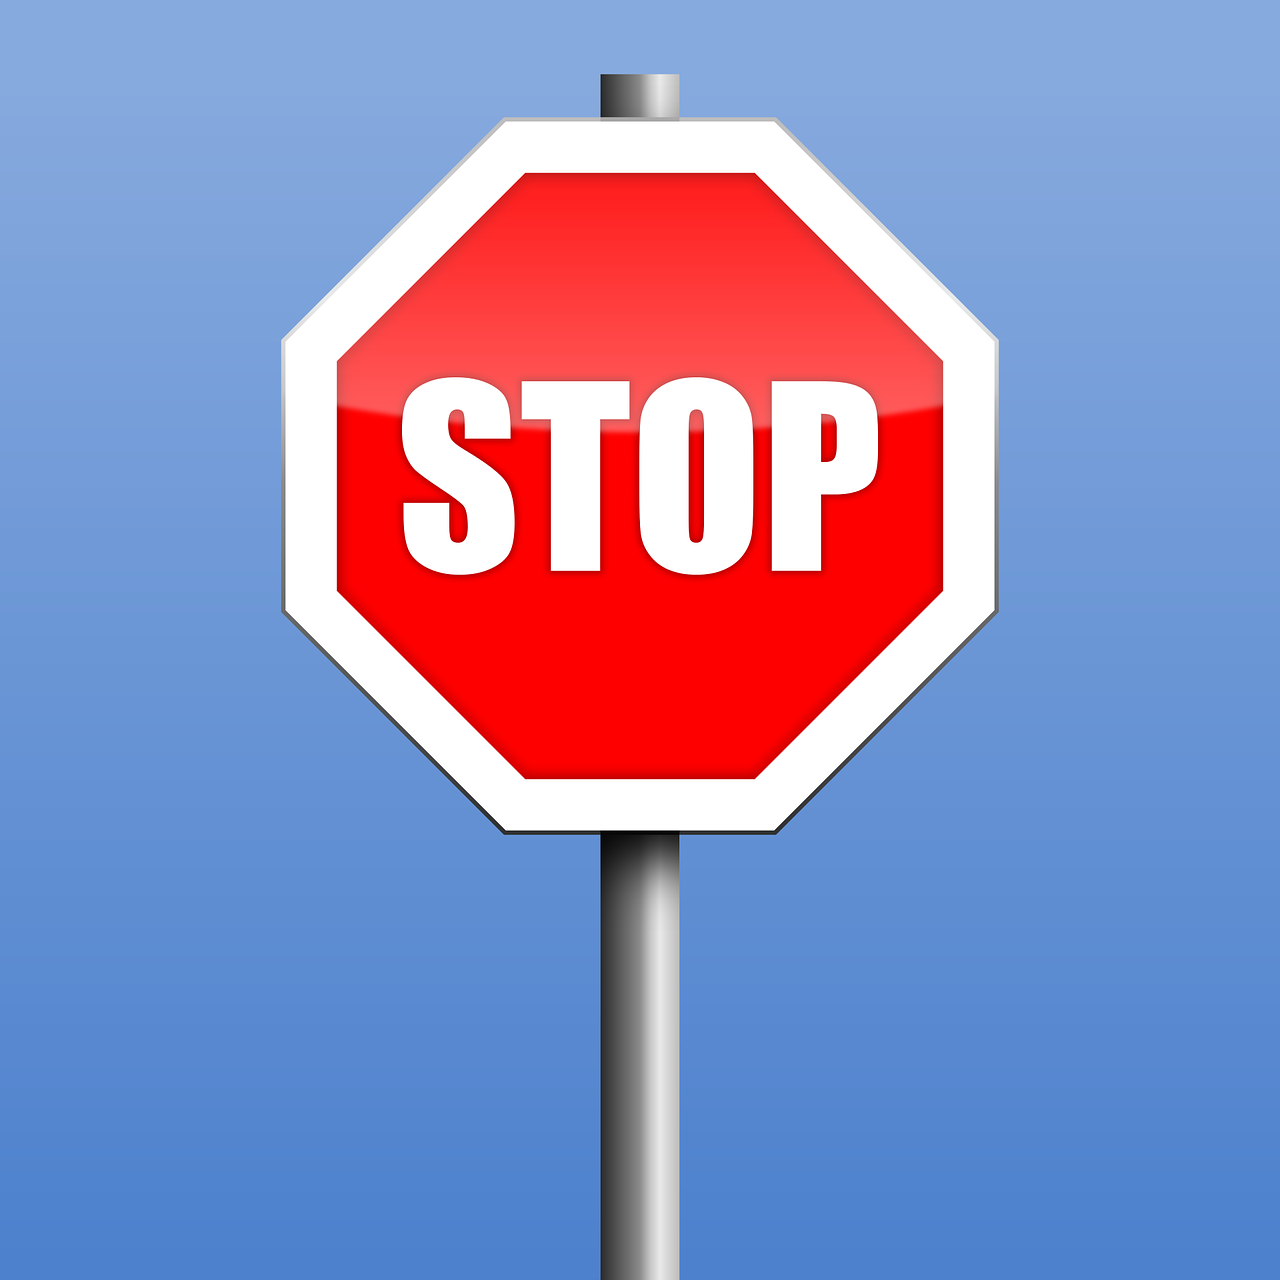 ¿Qué significa STOP en señal?